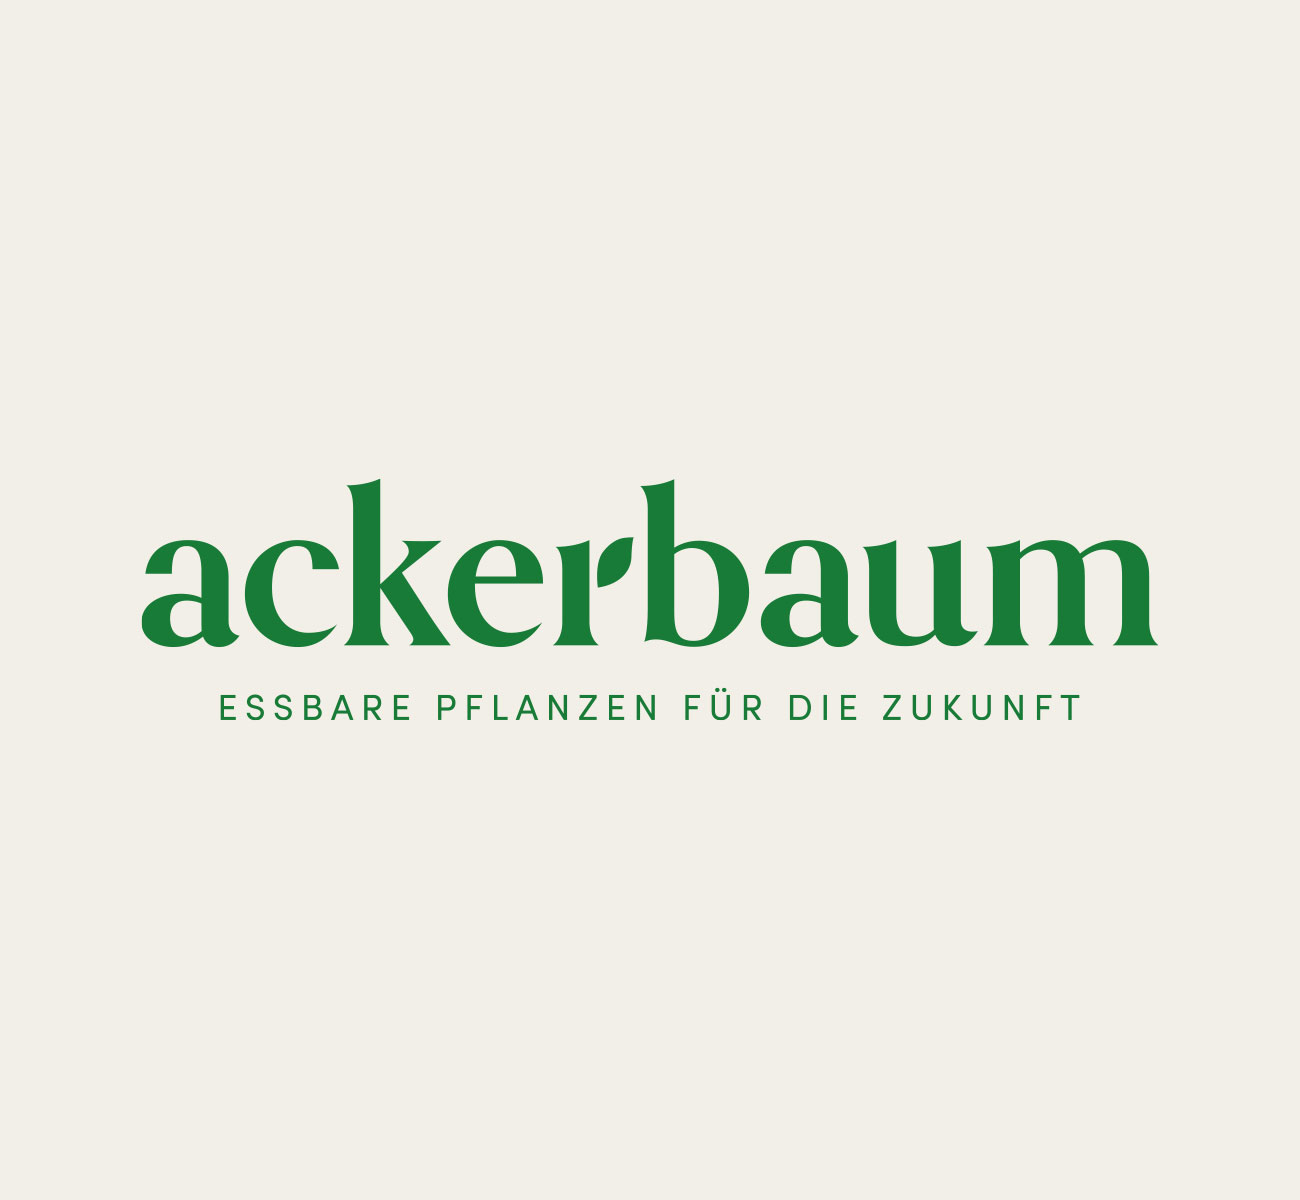 ackerbaum, illustration, corporate design